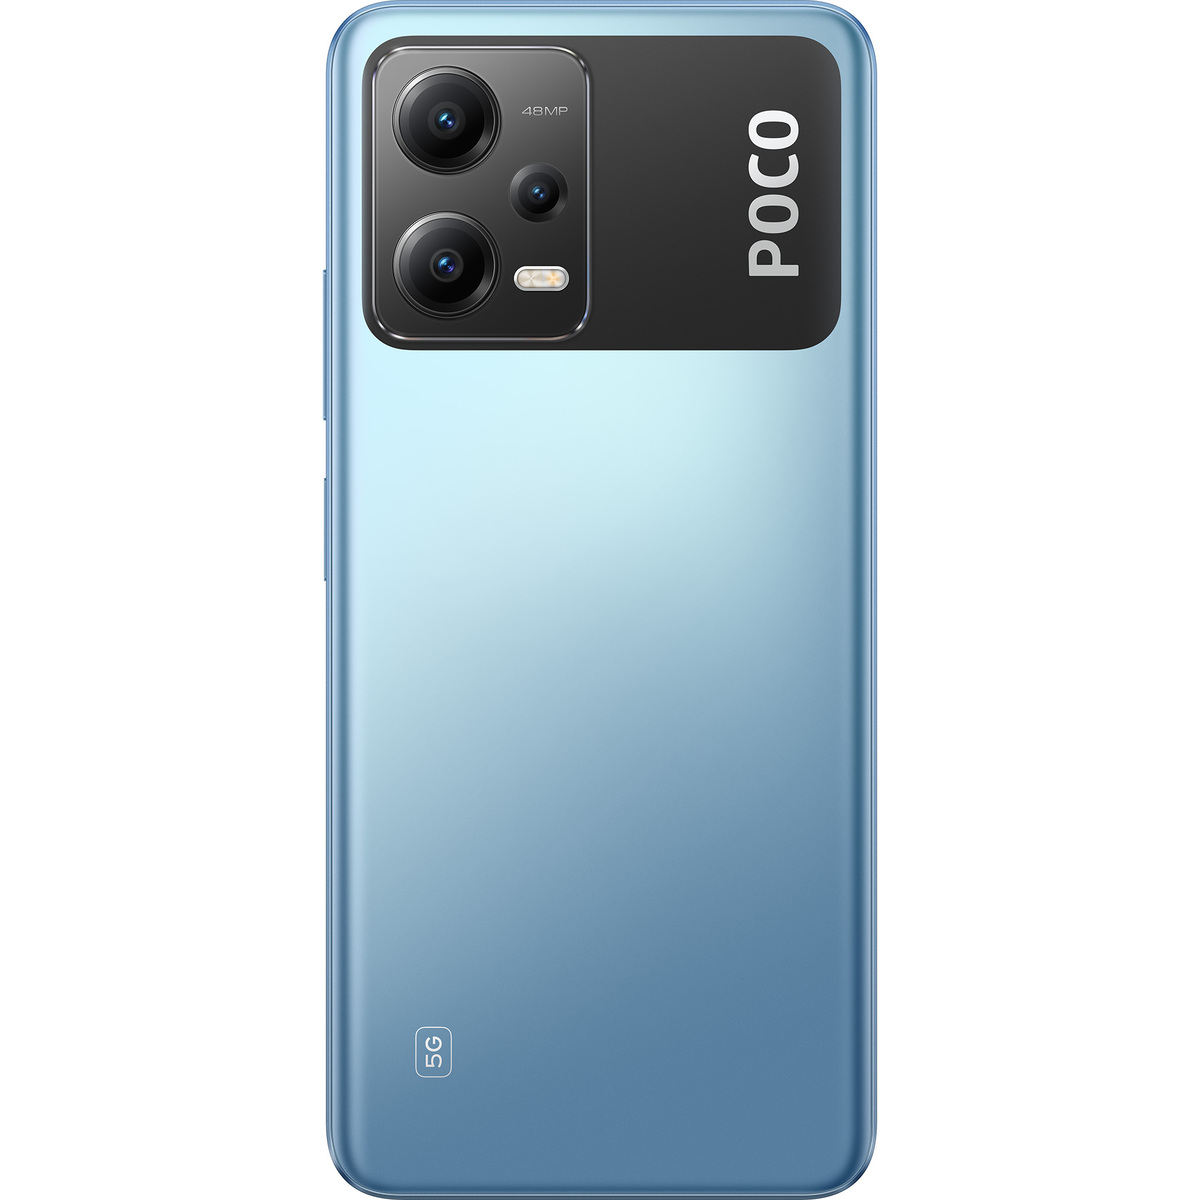 شاومي بوكو X5 هاتف ذكي 5G ثنائي الشريحة، 8 جيجابايت رام، سعة تخزين 256 جيجابايت، أزرق